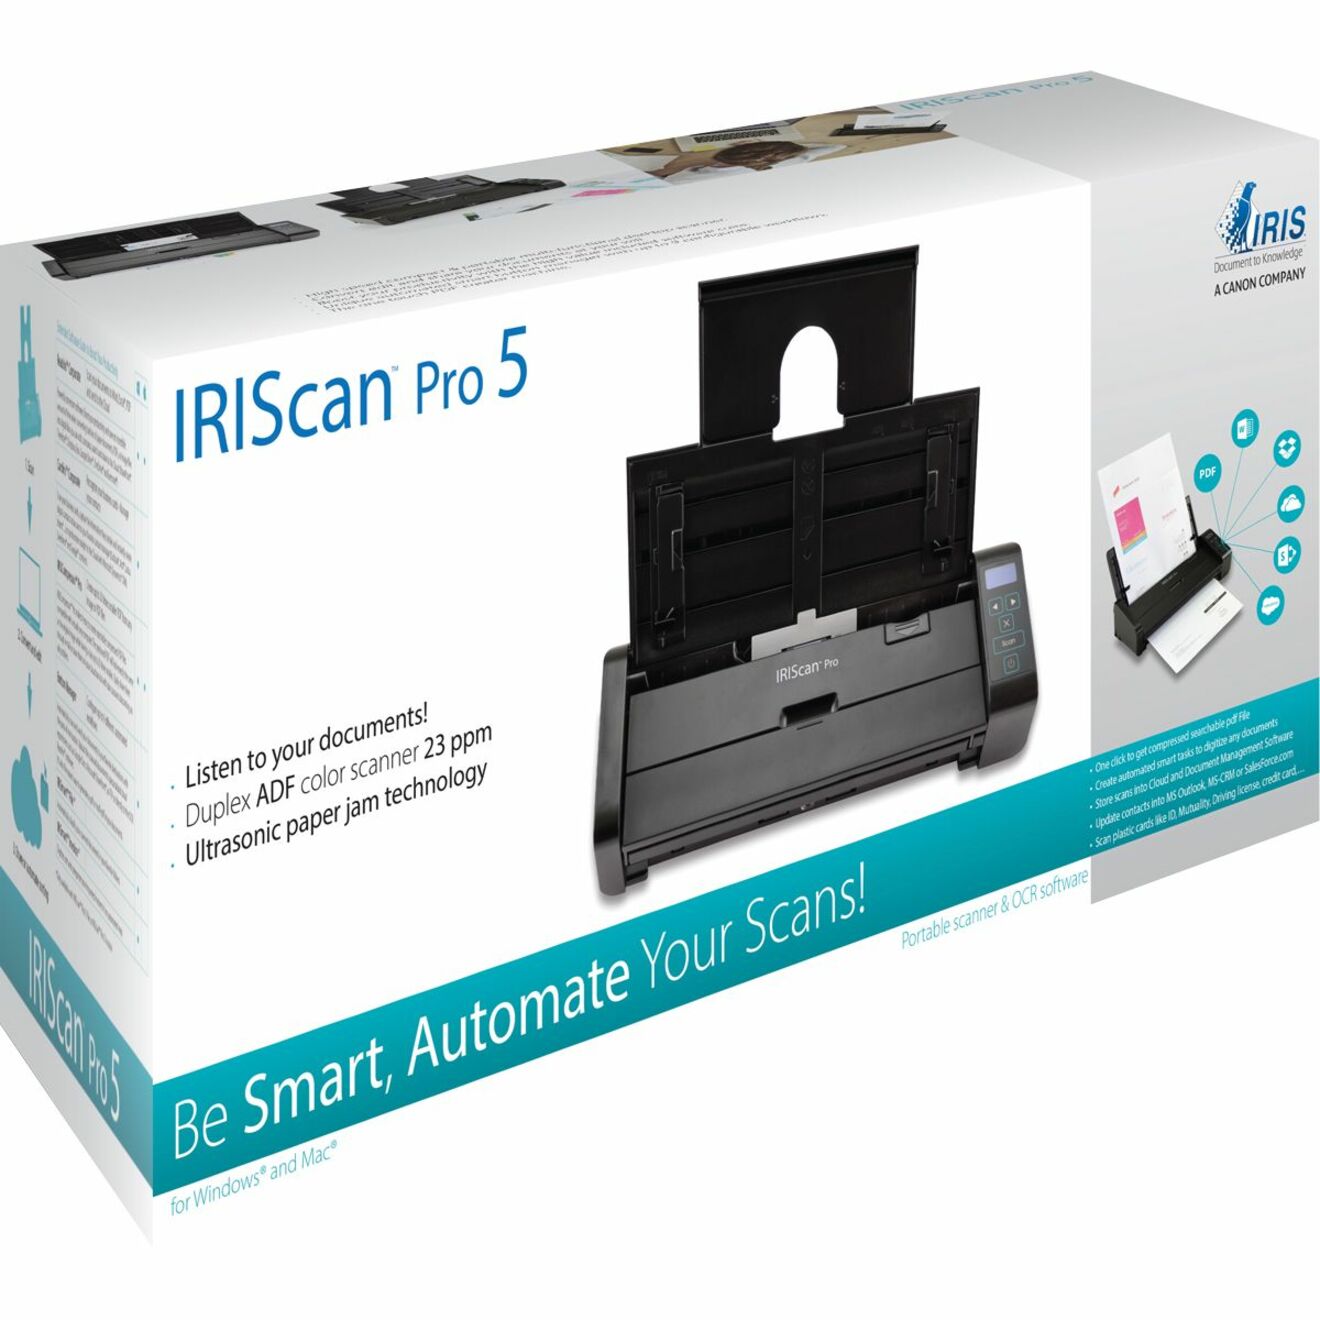 I.R.I.S. 459035 IRIScan Pro 5 High-Performance Duplex Desktop Scanner, A4/Letter Size, Color Scanning